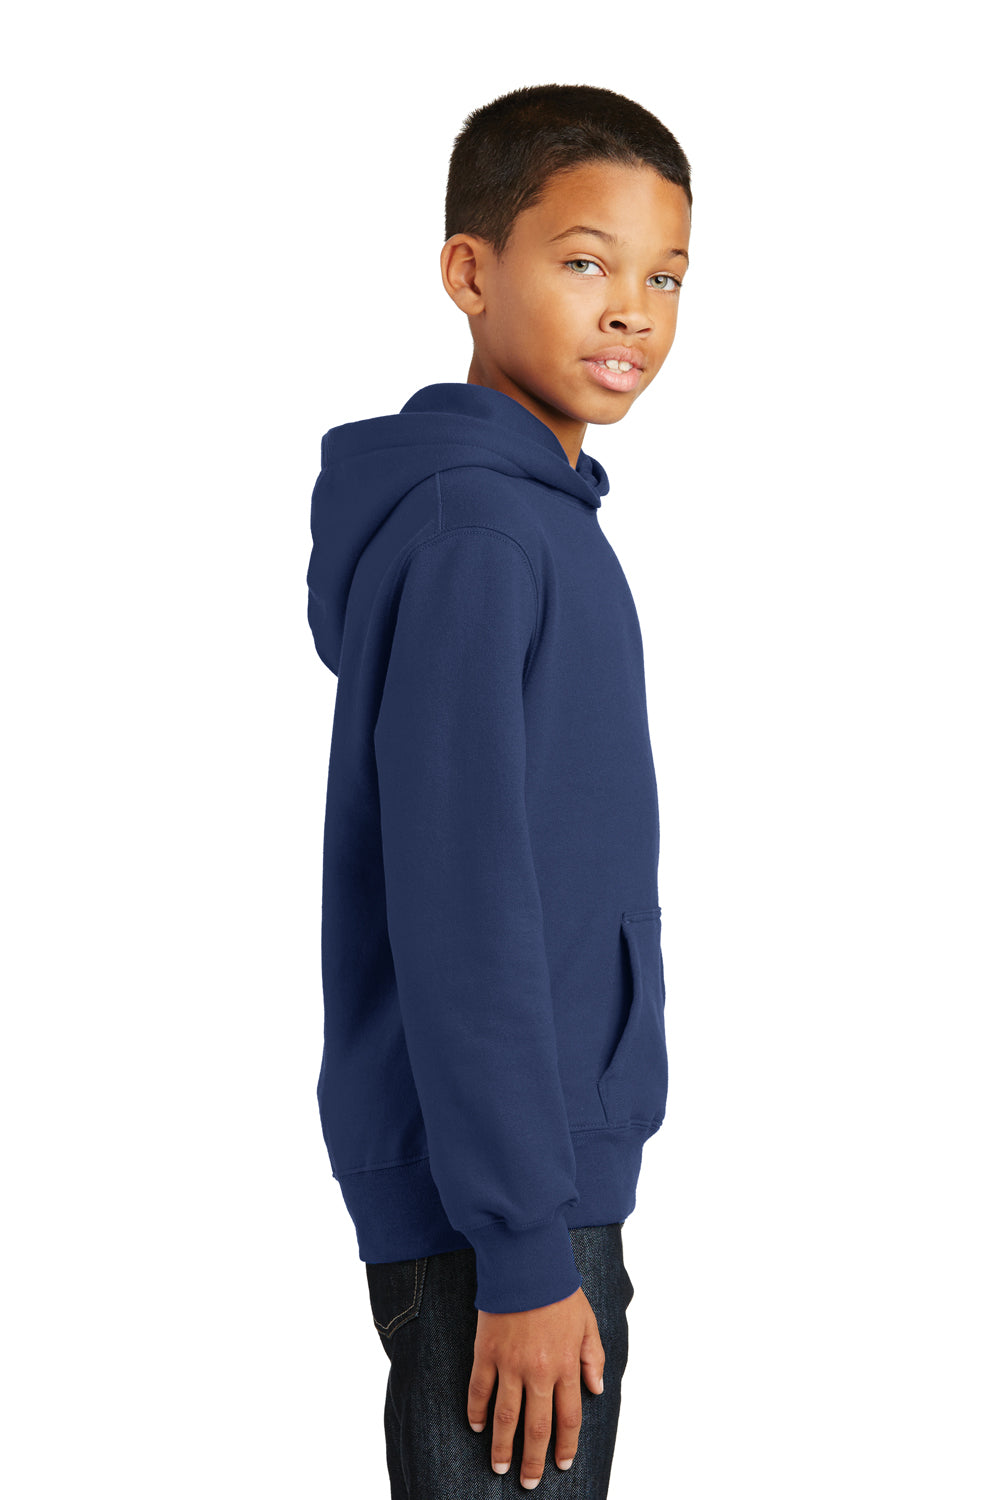 Port & Company PC850YH Youth Fan Favorite Fleece Hooded Sweatshirt Hoodie Navy Blue Side